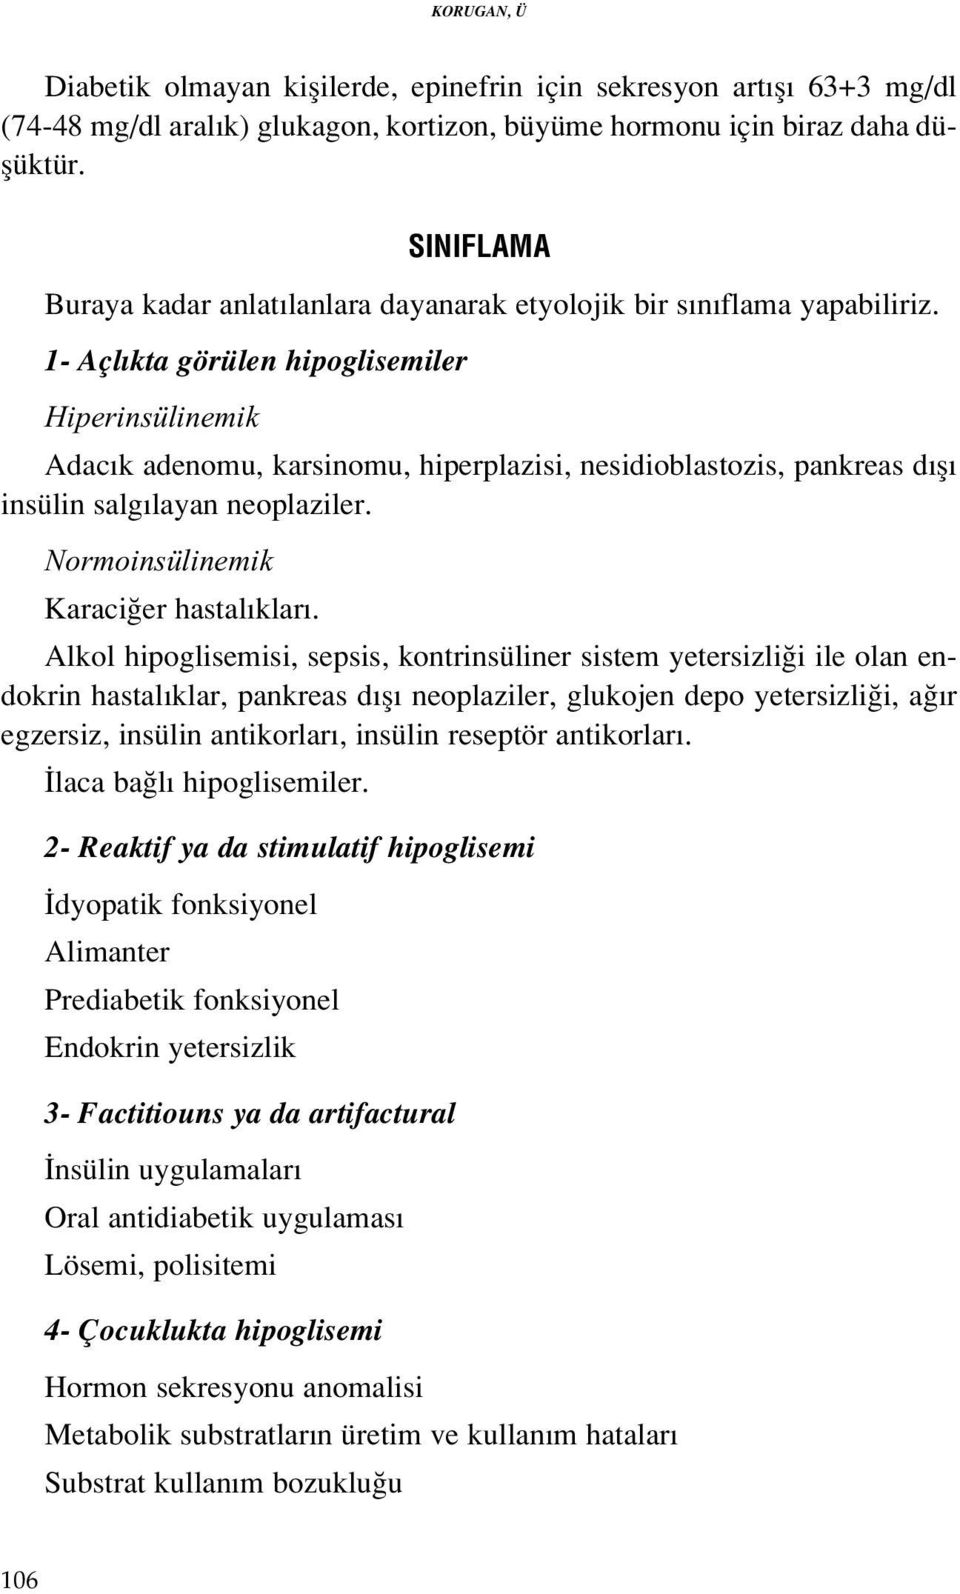 1- Açl kta görülen hipoglisemiler Hiperinsülinemik Adac k adenomu, karsinomu, hiperplazisi, nesidioblastozis, pankreas d fl insülin salg layan neoplaziler. Normoinsülinemik Karaci er hastal klar.